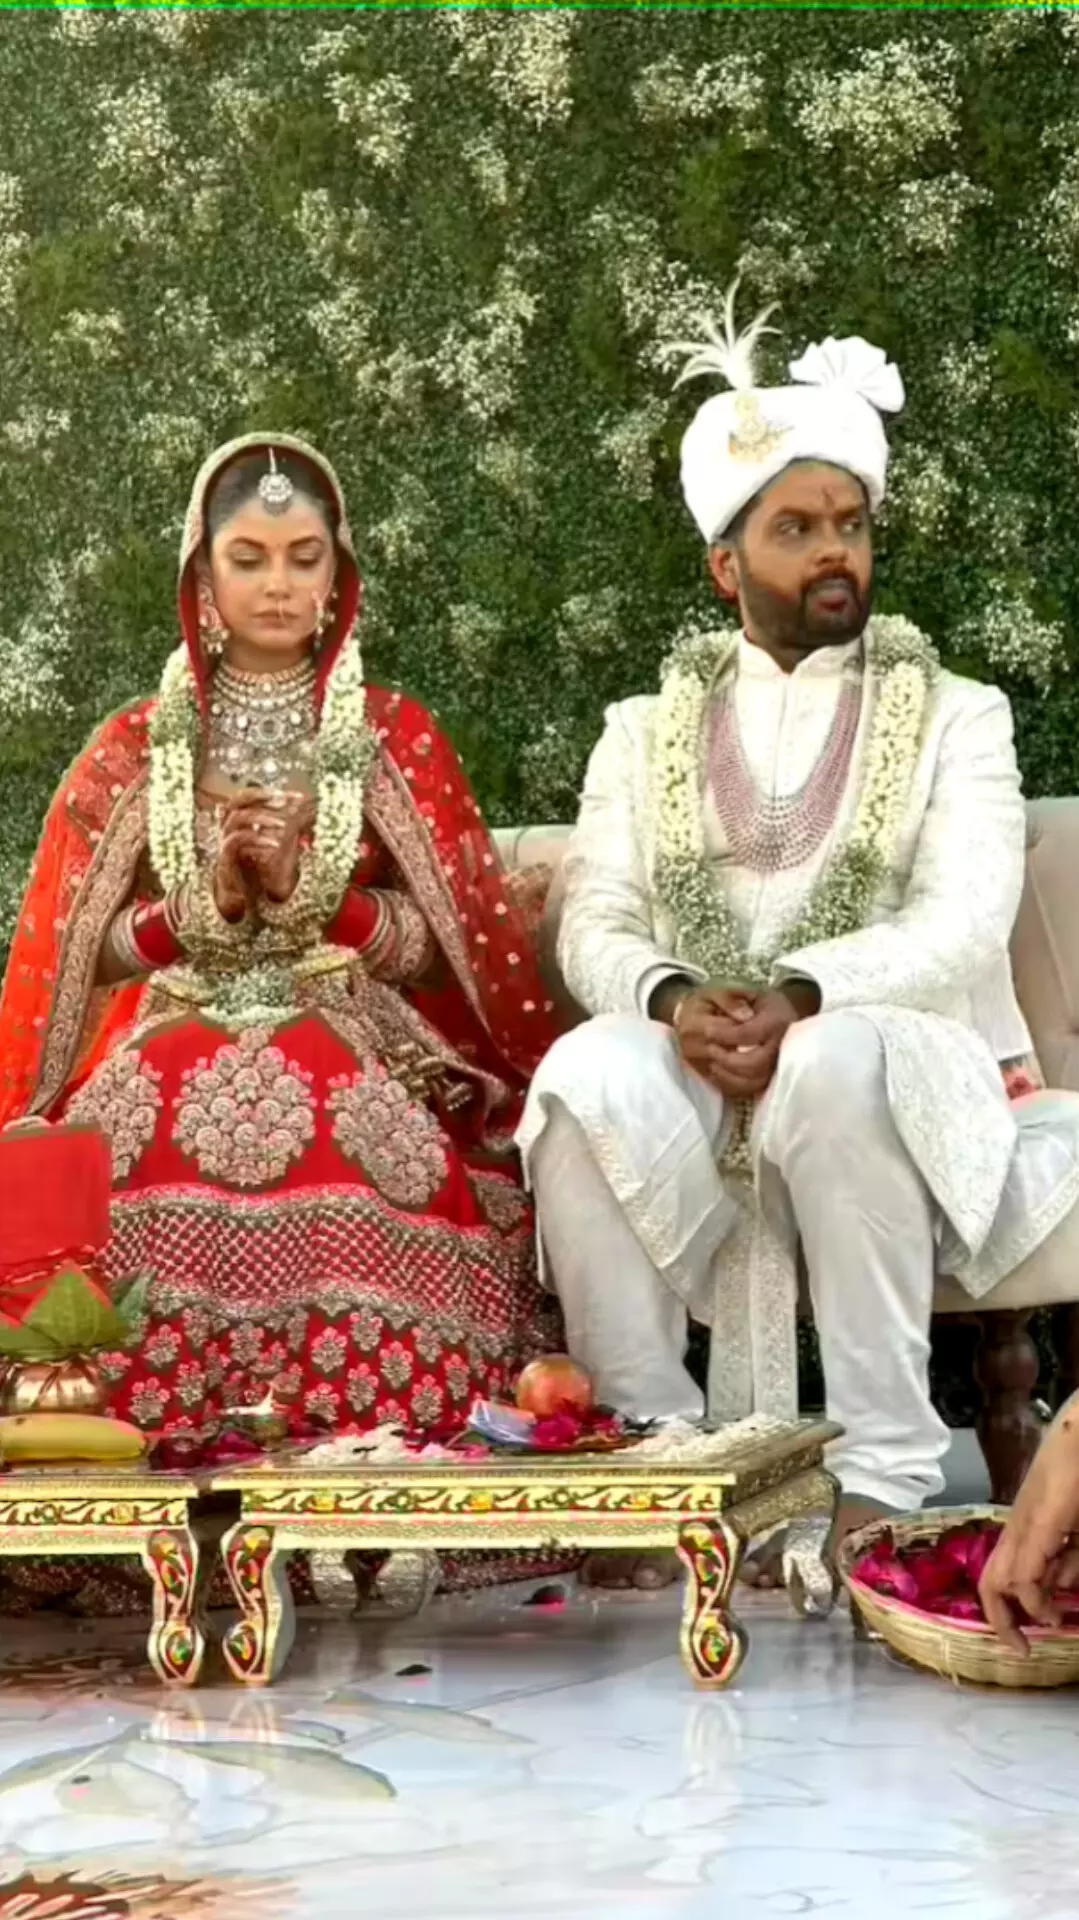 मीरा चोपड़ा ने रक्षित केजरीवाल संग शादी रचाई, सोशल मीडिया पर तस्वीरें वायरल